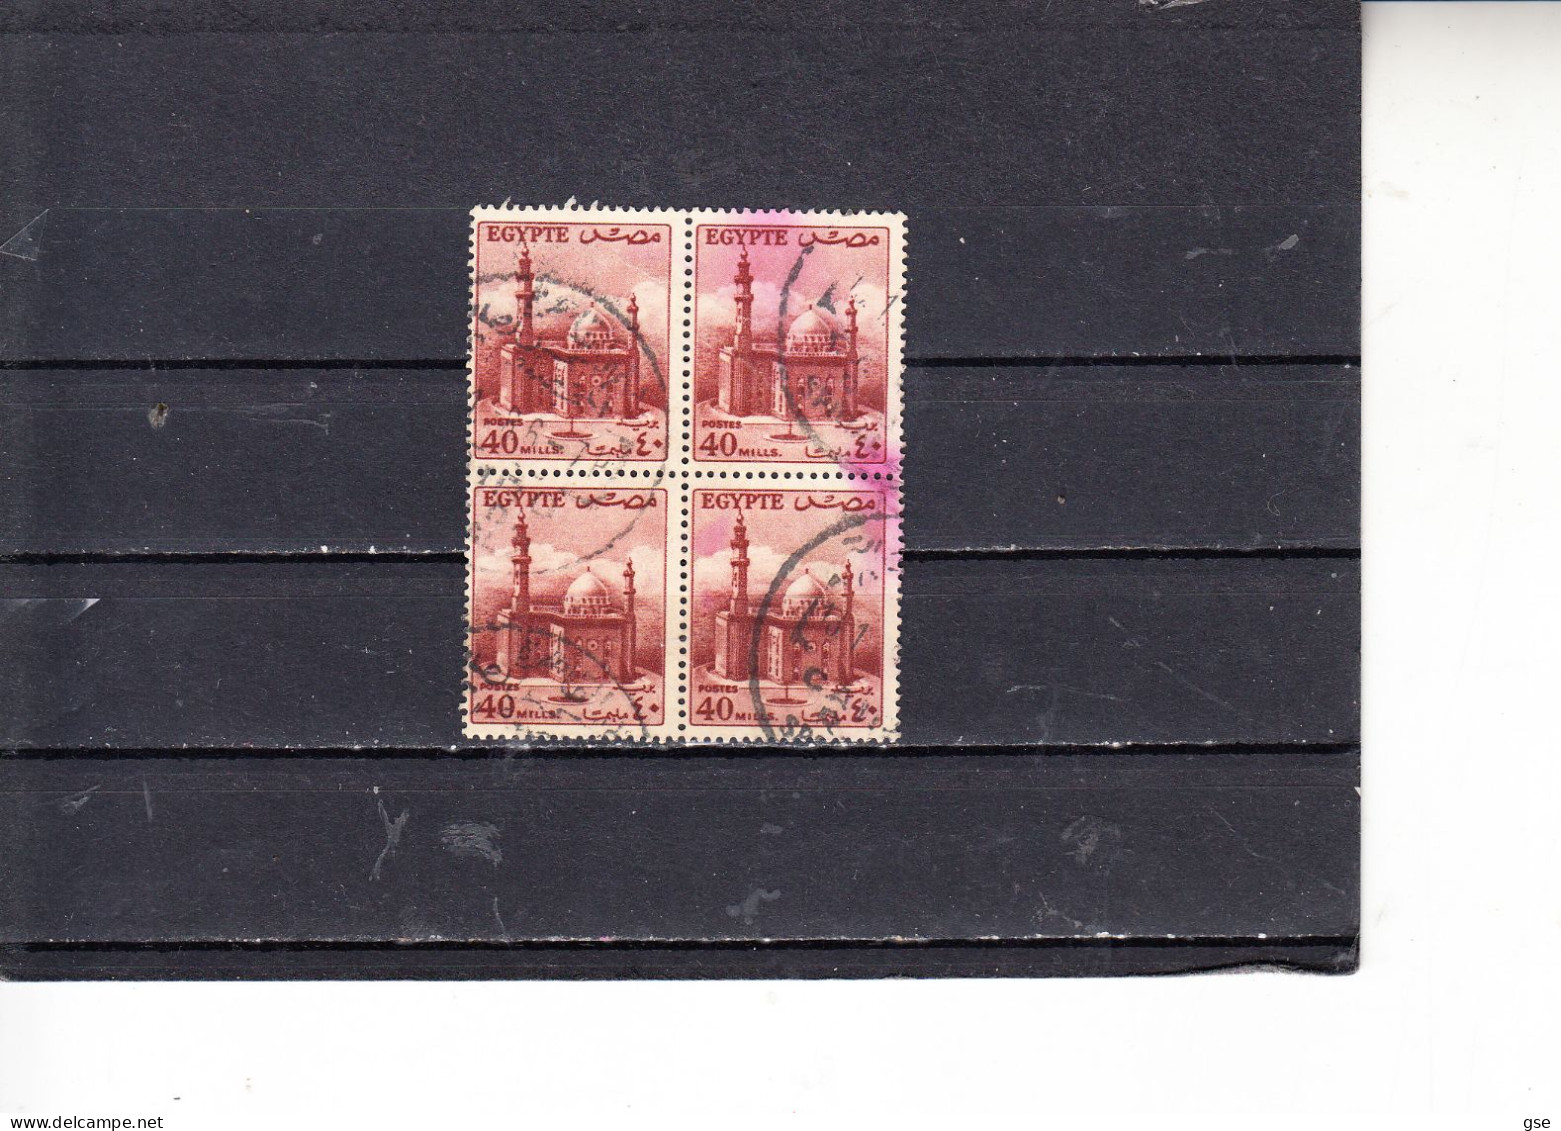 EGITTO  1953-56  - Yvert  321° (quartina) - Serie Corrente - Used Stamps